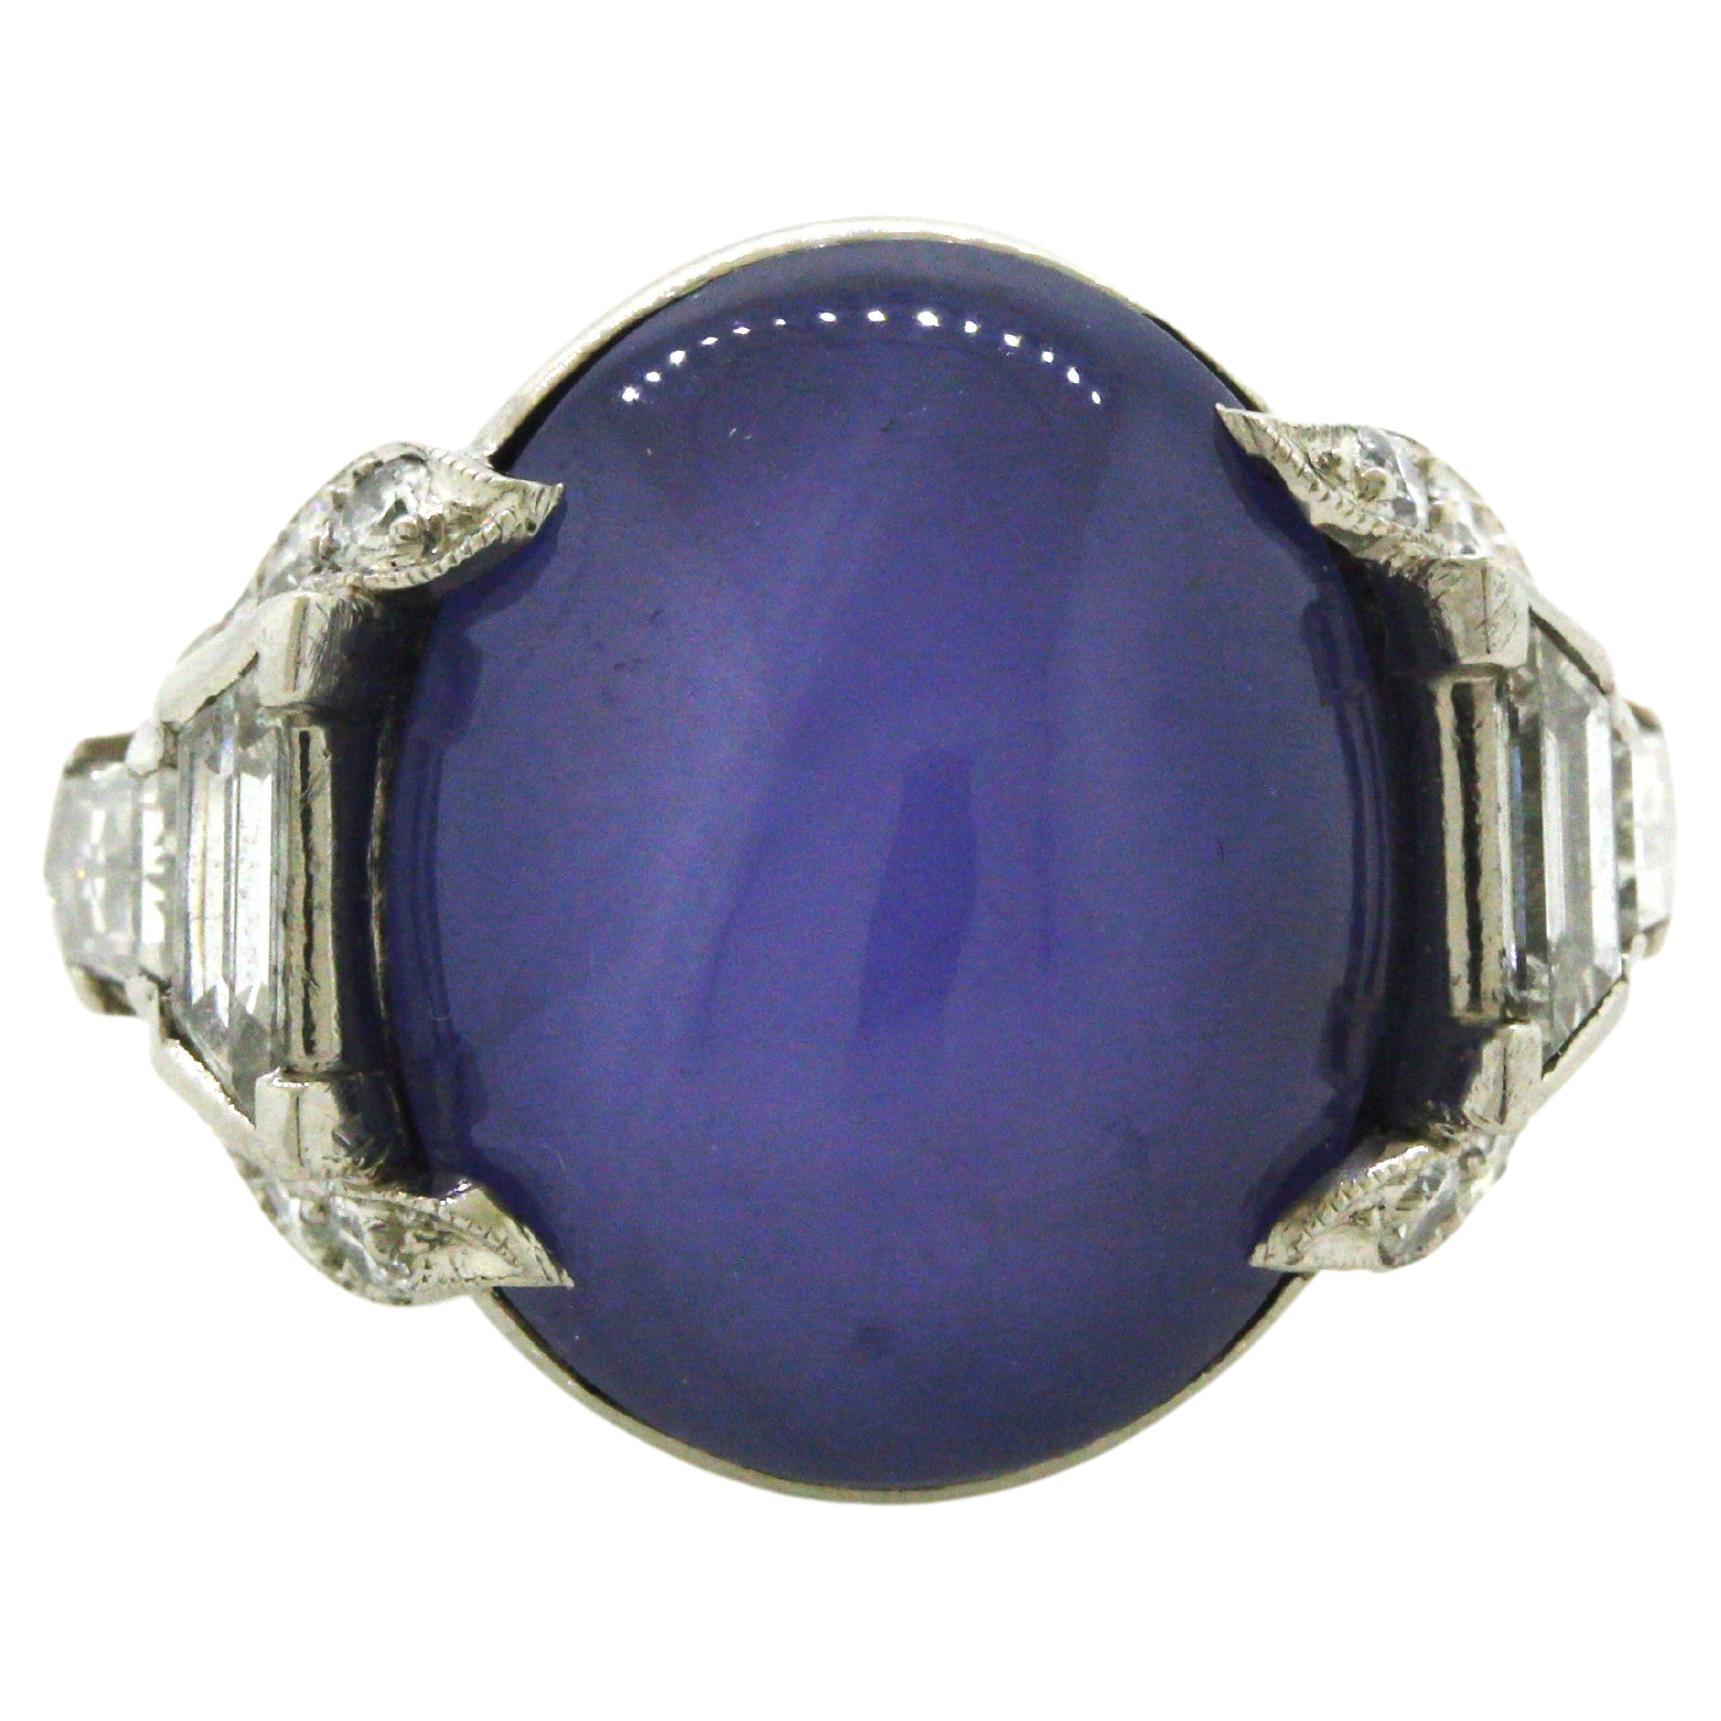 Ein schöner Platinring im Art-Déco-Stil aus den späten 1920er Jahren. Der blaue Sternsaphir mit einem Gewicht von etwa 15 Karat hat eine satte, gleichmäßig violett-blaue Farbe. Ergänzt wird er durch 0,75 Karat strahlend weiße Diamanten, die an den